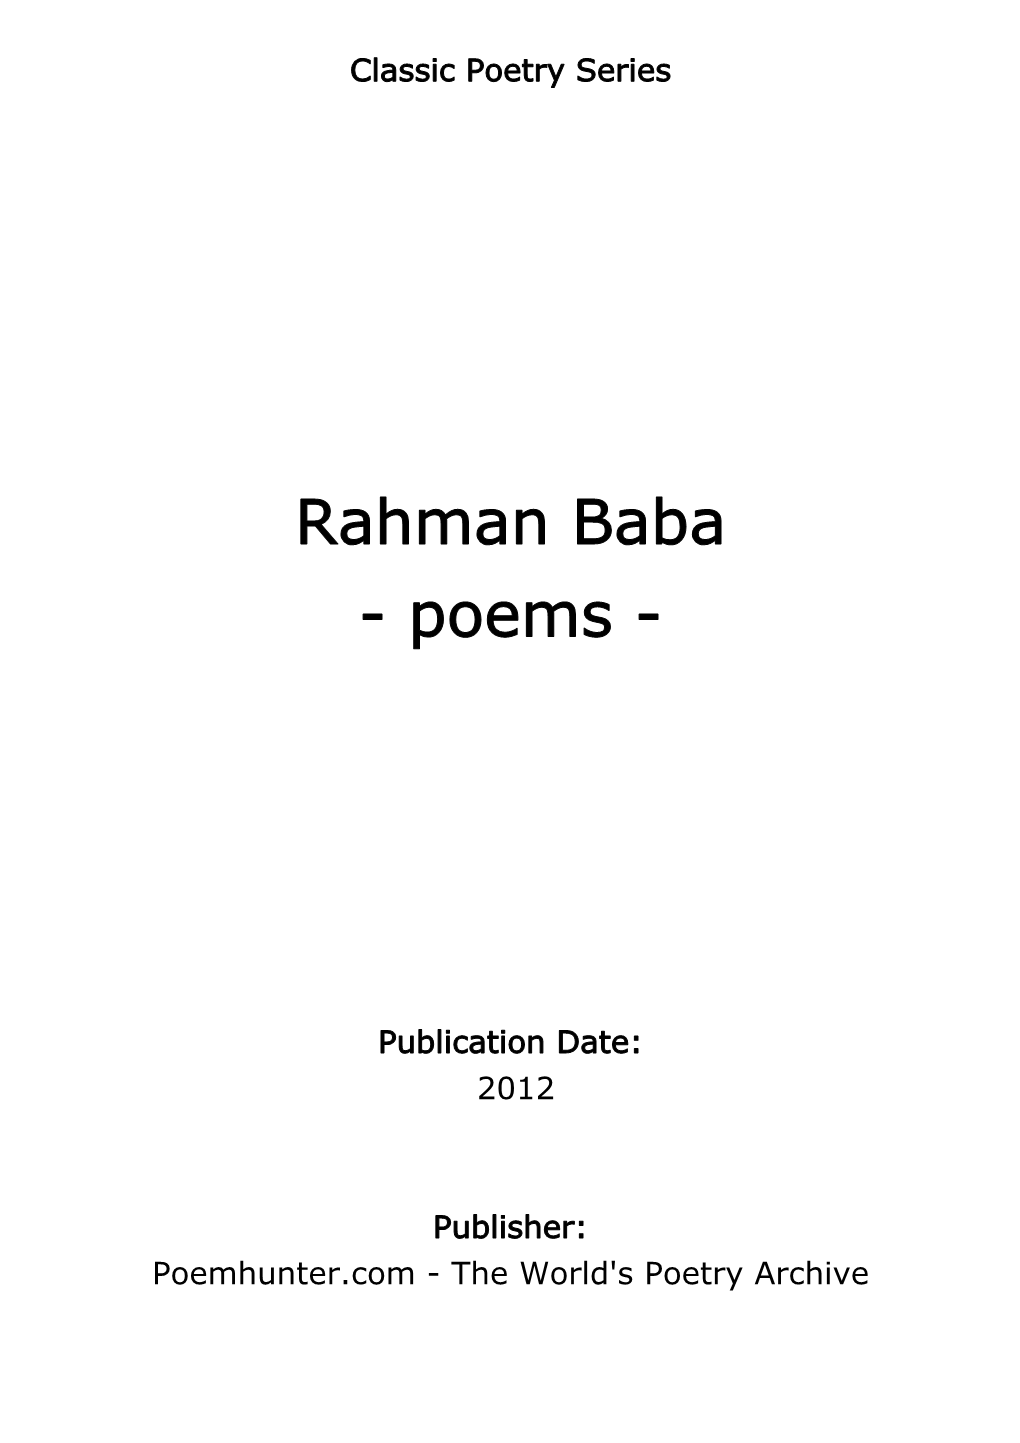 Rahman Baba - Poems